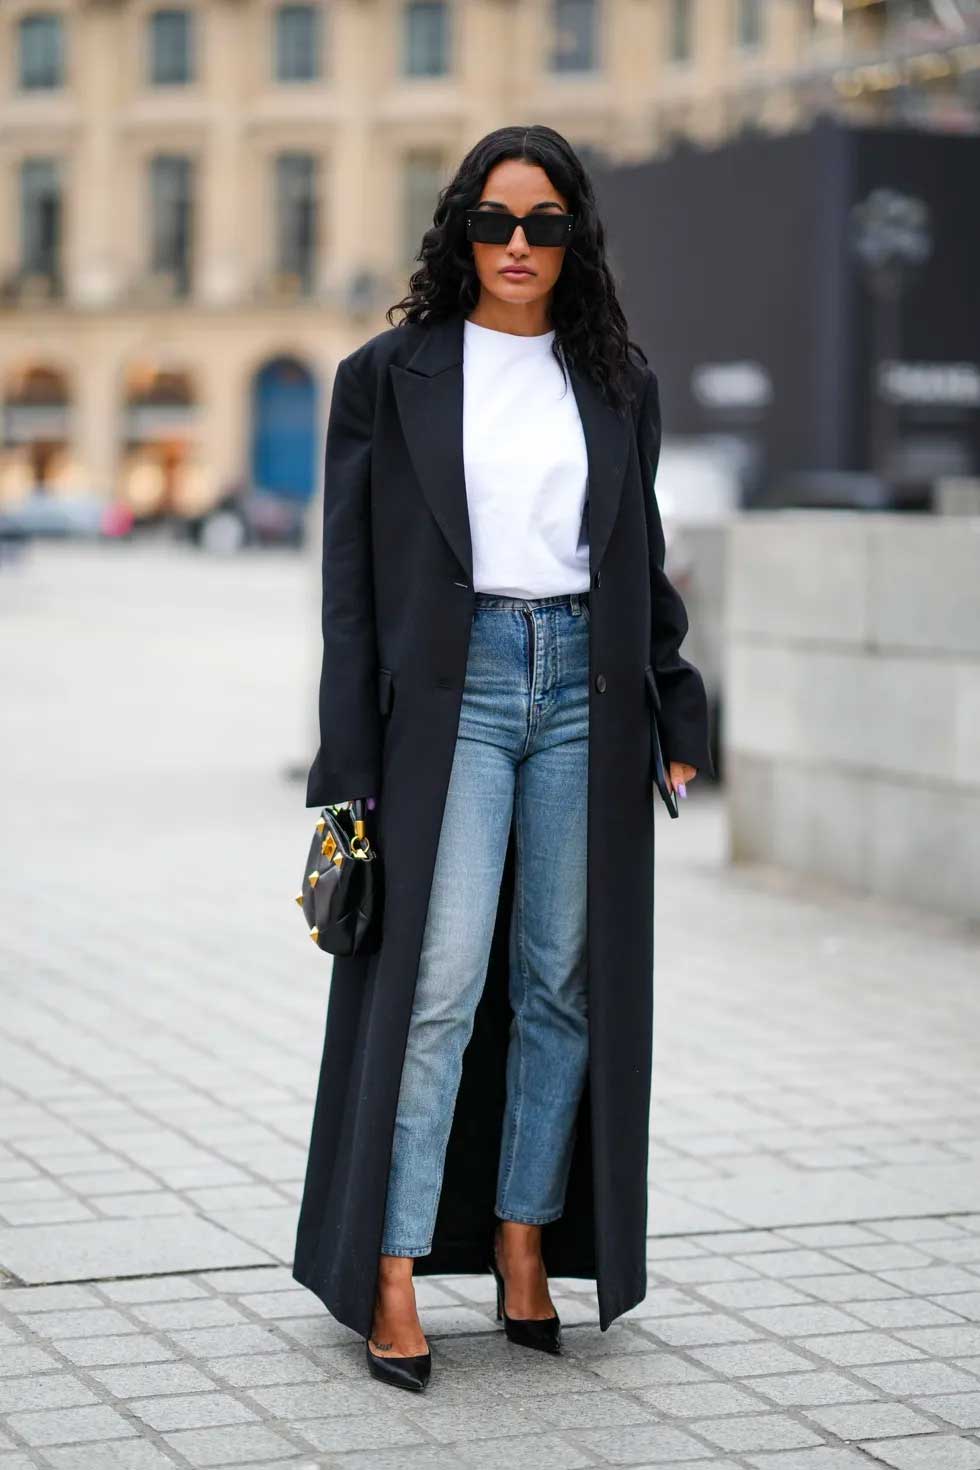 calça jeans skinny camiseta branca casaco preto comprido óculos escuros scarpin preto